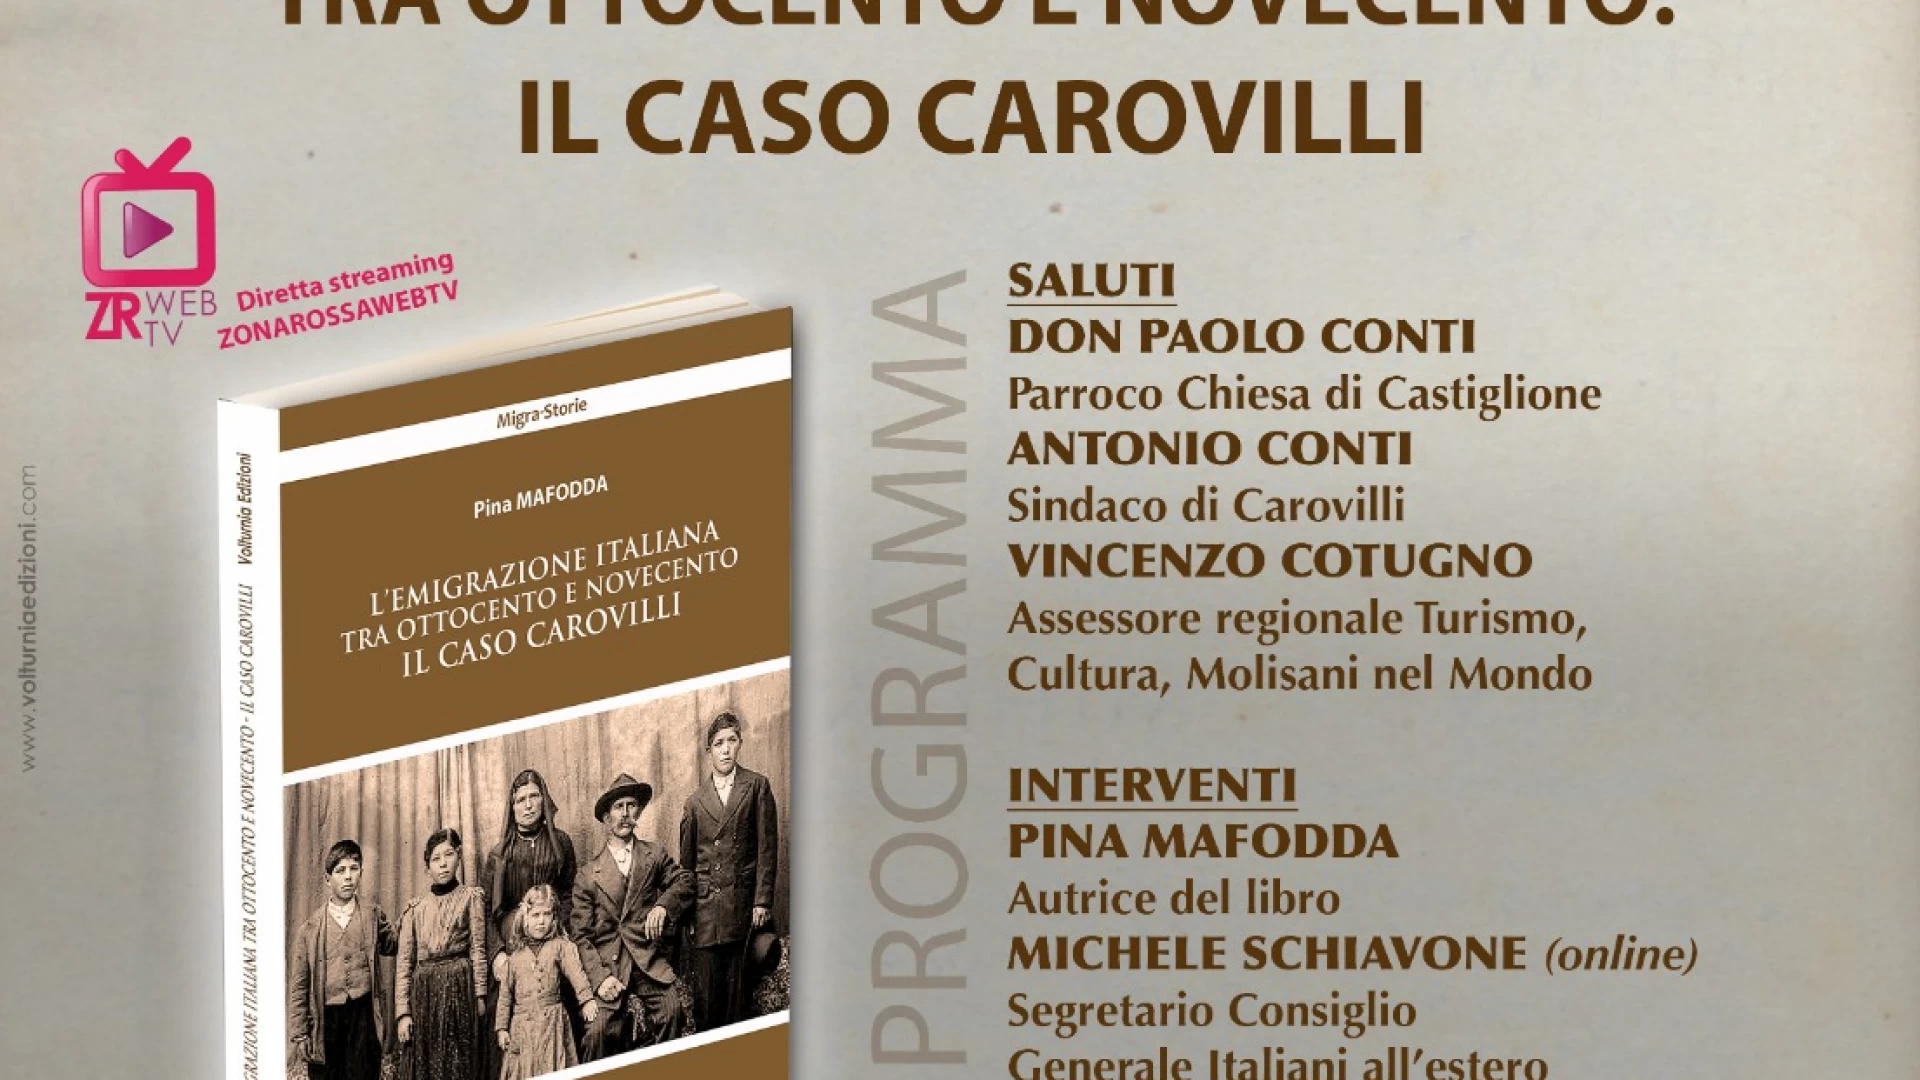 Emigrazione italiana tra ottocento e novecento: il caso Carovilli